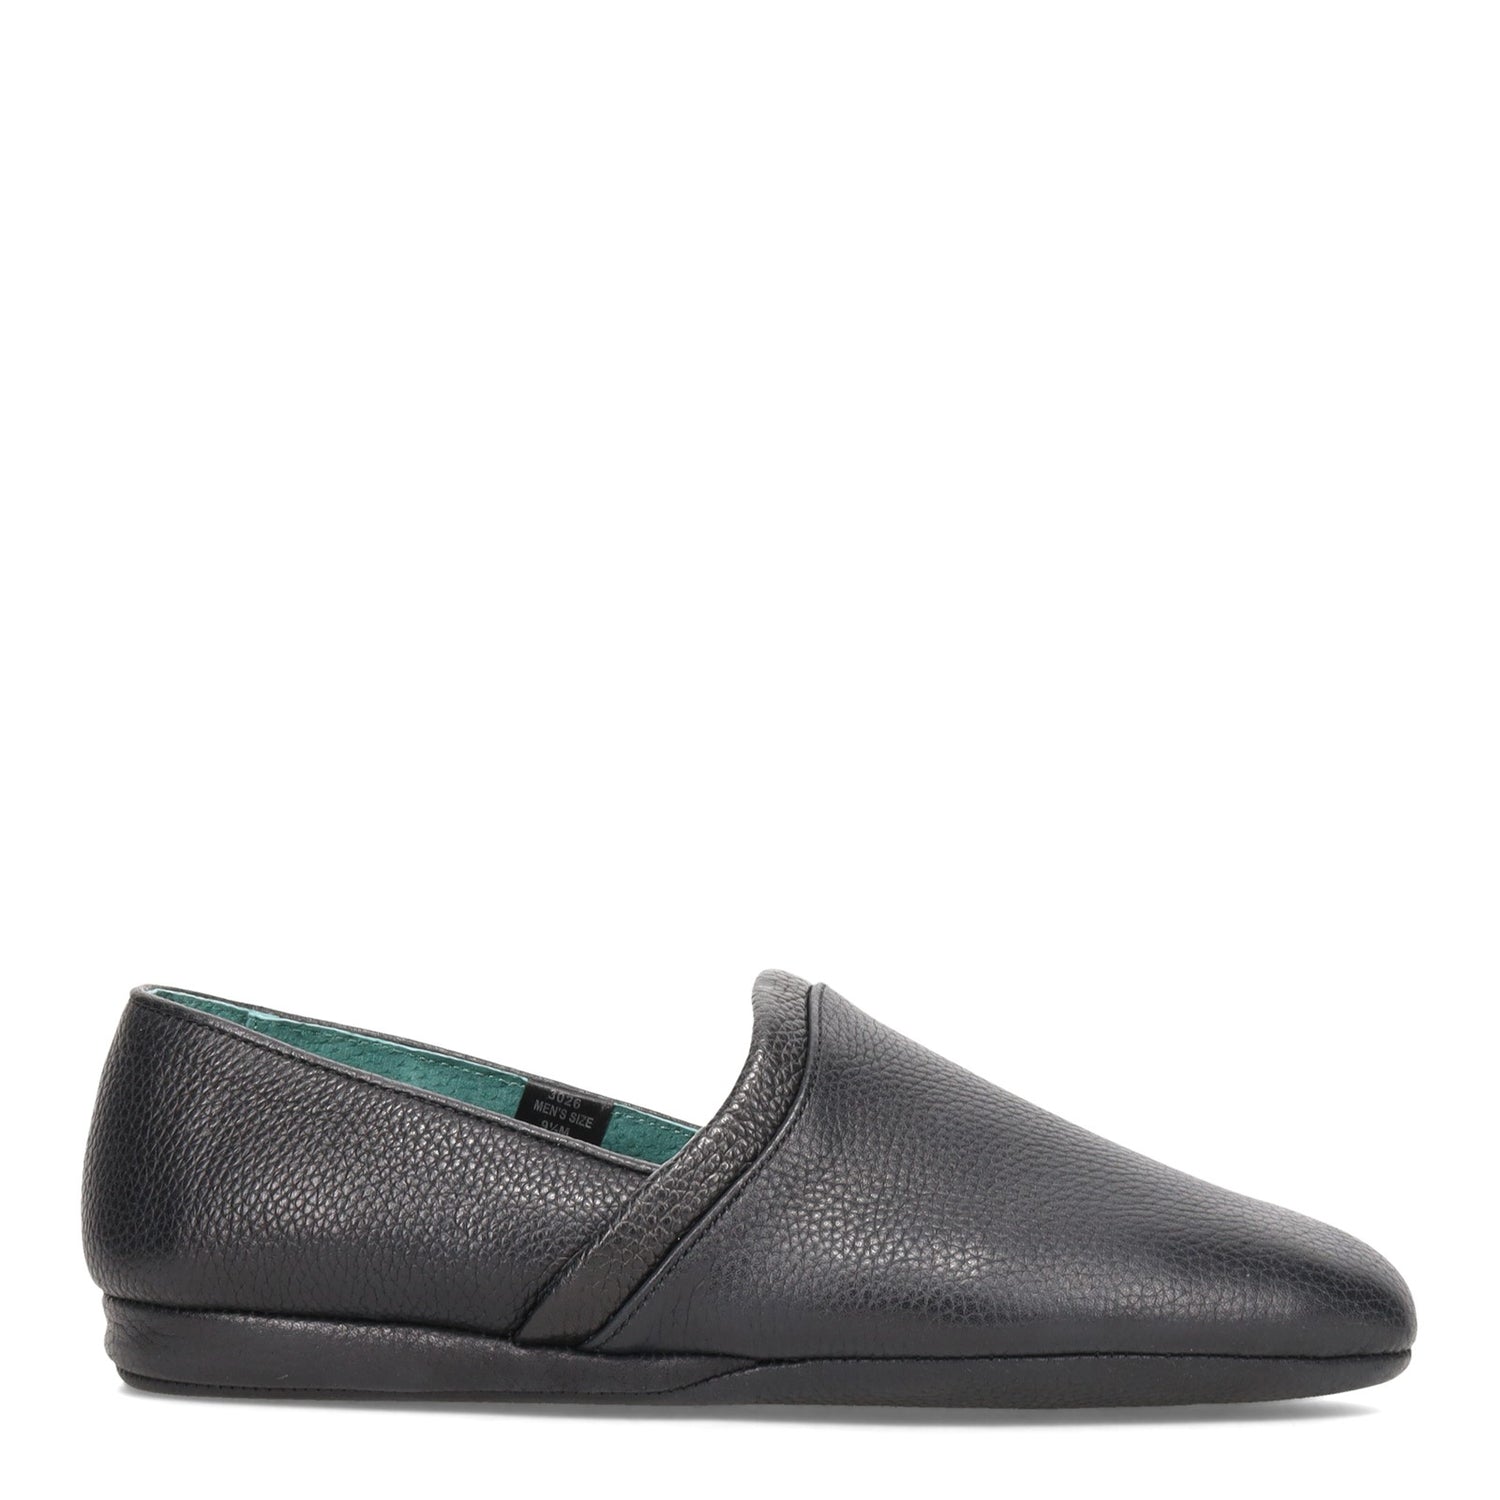 Peltz Shoes  Men's L.B. Evans Aristocrat Opera Slipper BLACK 3026